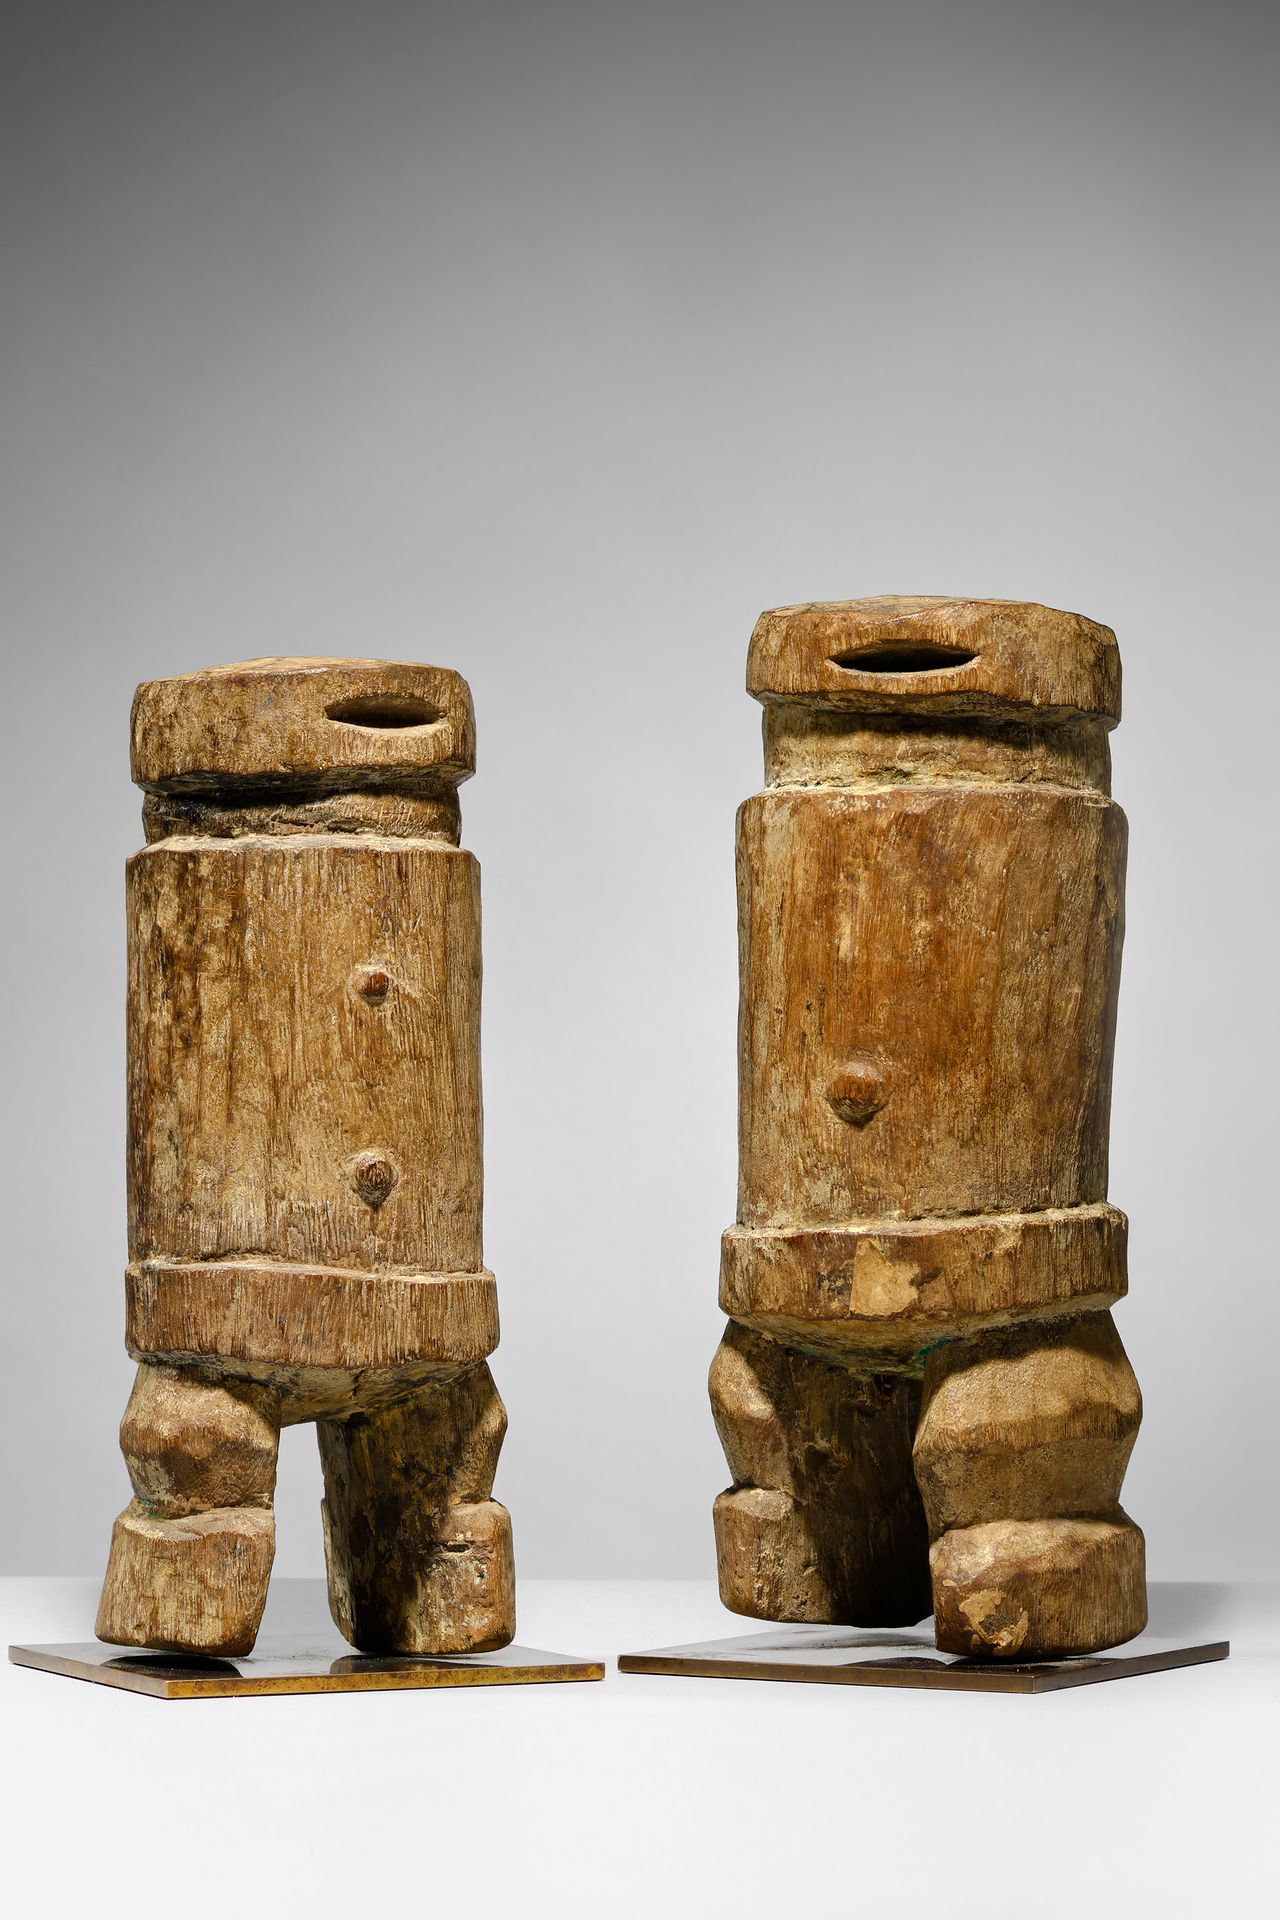 Losso 多哥

木材 - 31厘米和29.5厘米

出处。

私人收藏，法国